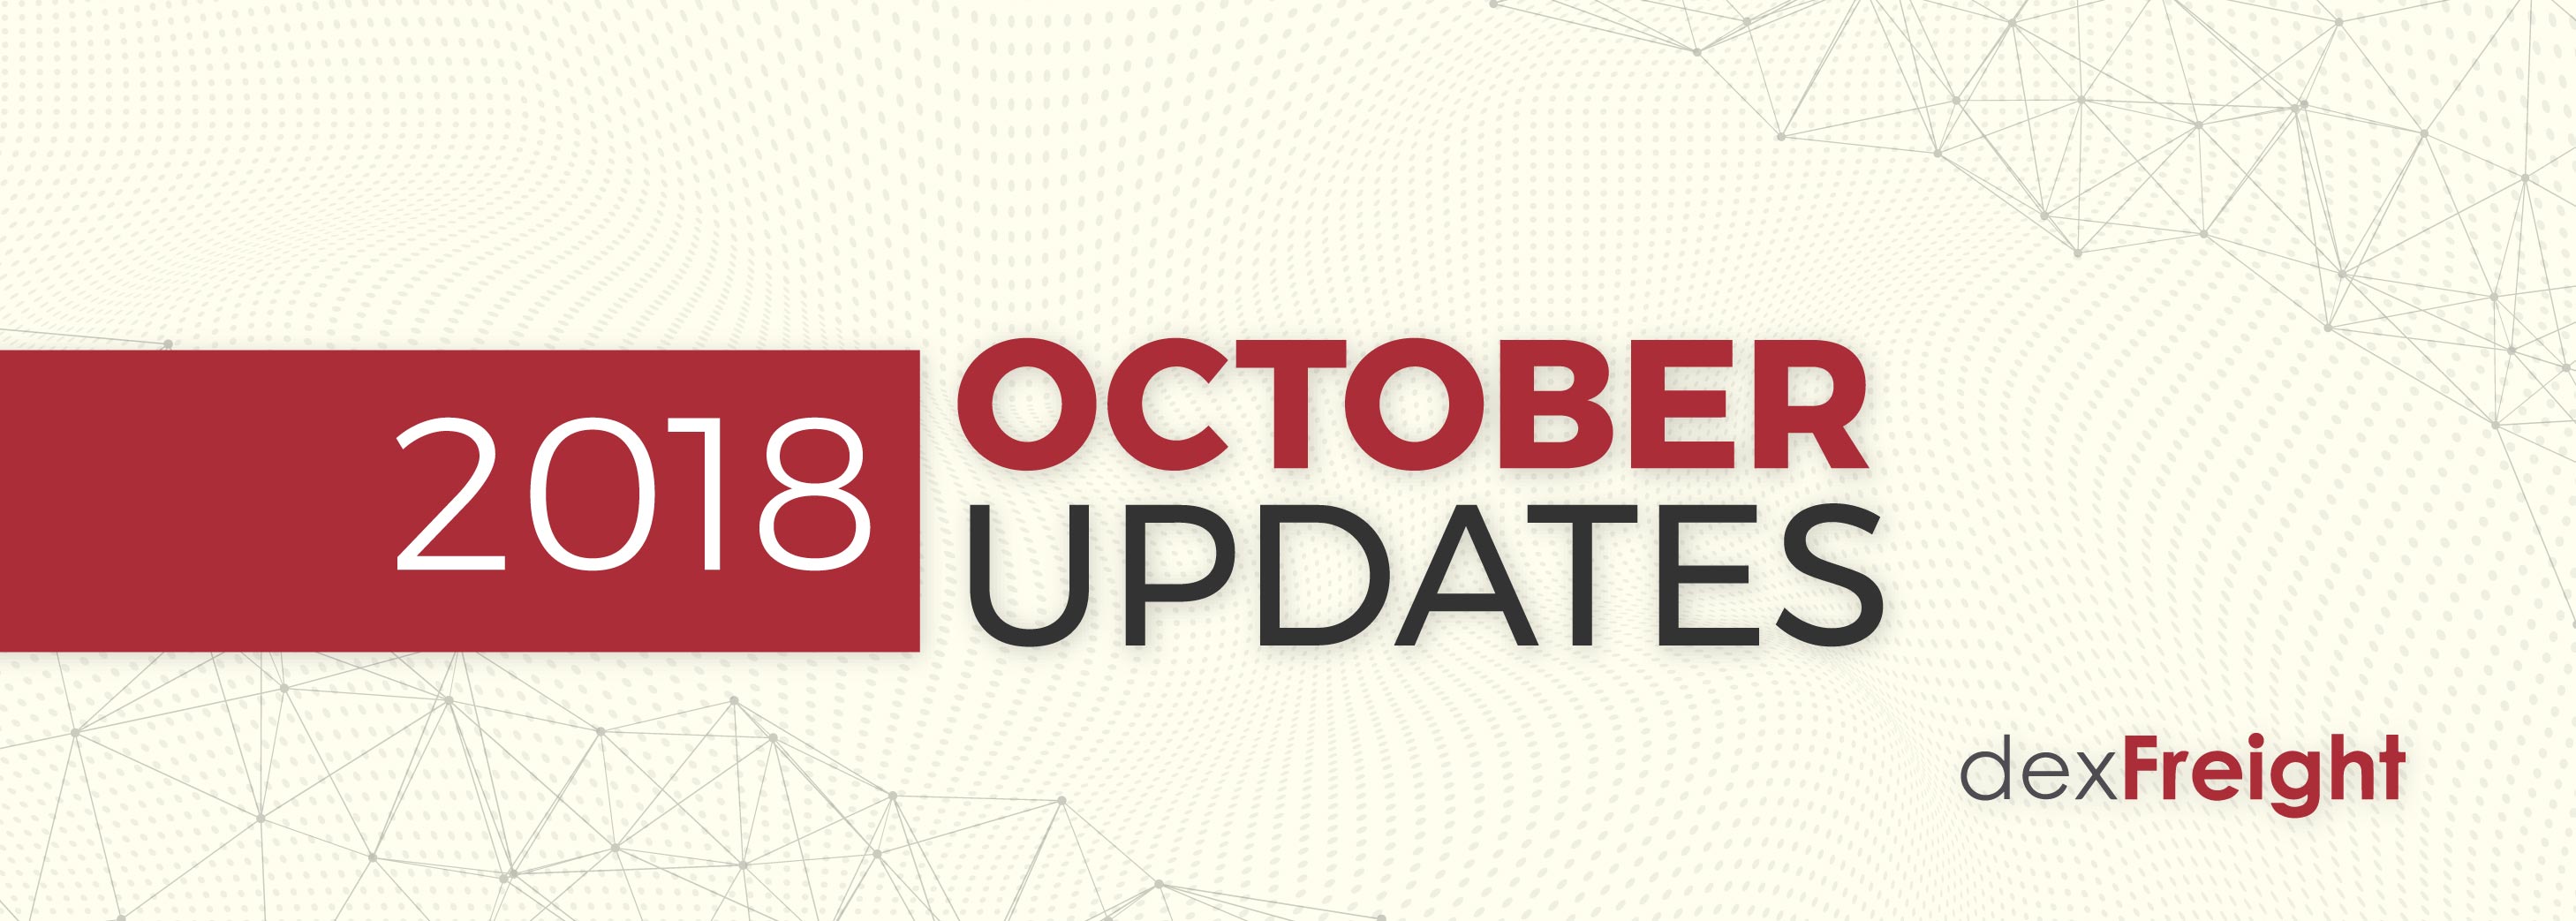 dexfreight updates october 2018